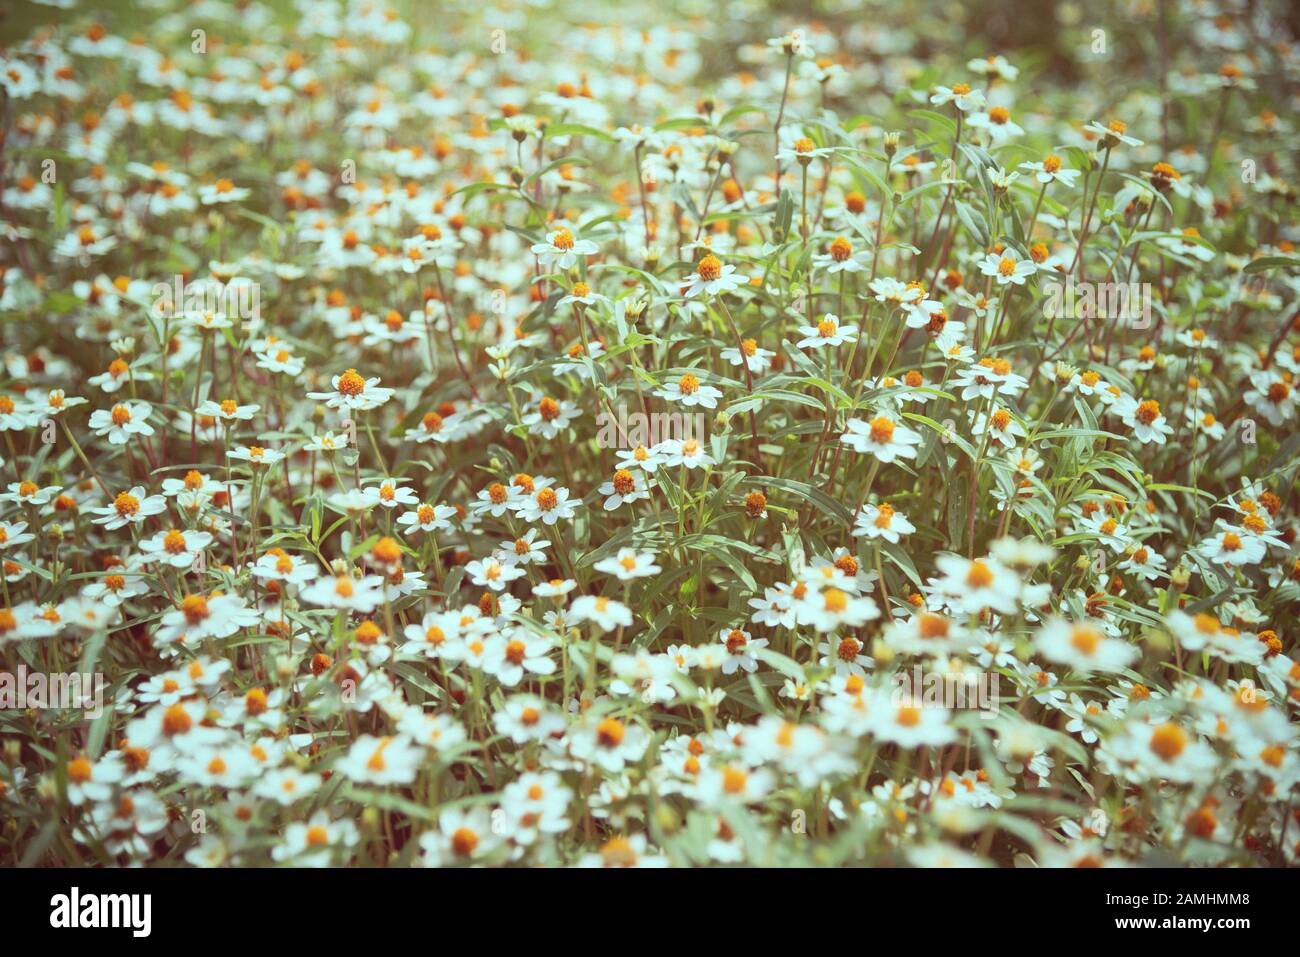 Altes Bild Wiese Blumendesign Vintage-Stil, Schöne Natur Landschaft Feld weiße Blume aus Kamille, Kamille oder Chamaemelum Nobile, Blumen im Freien Stockfoto